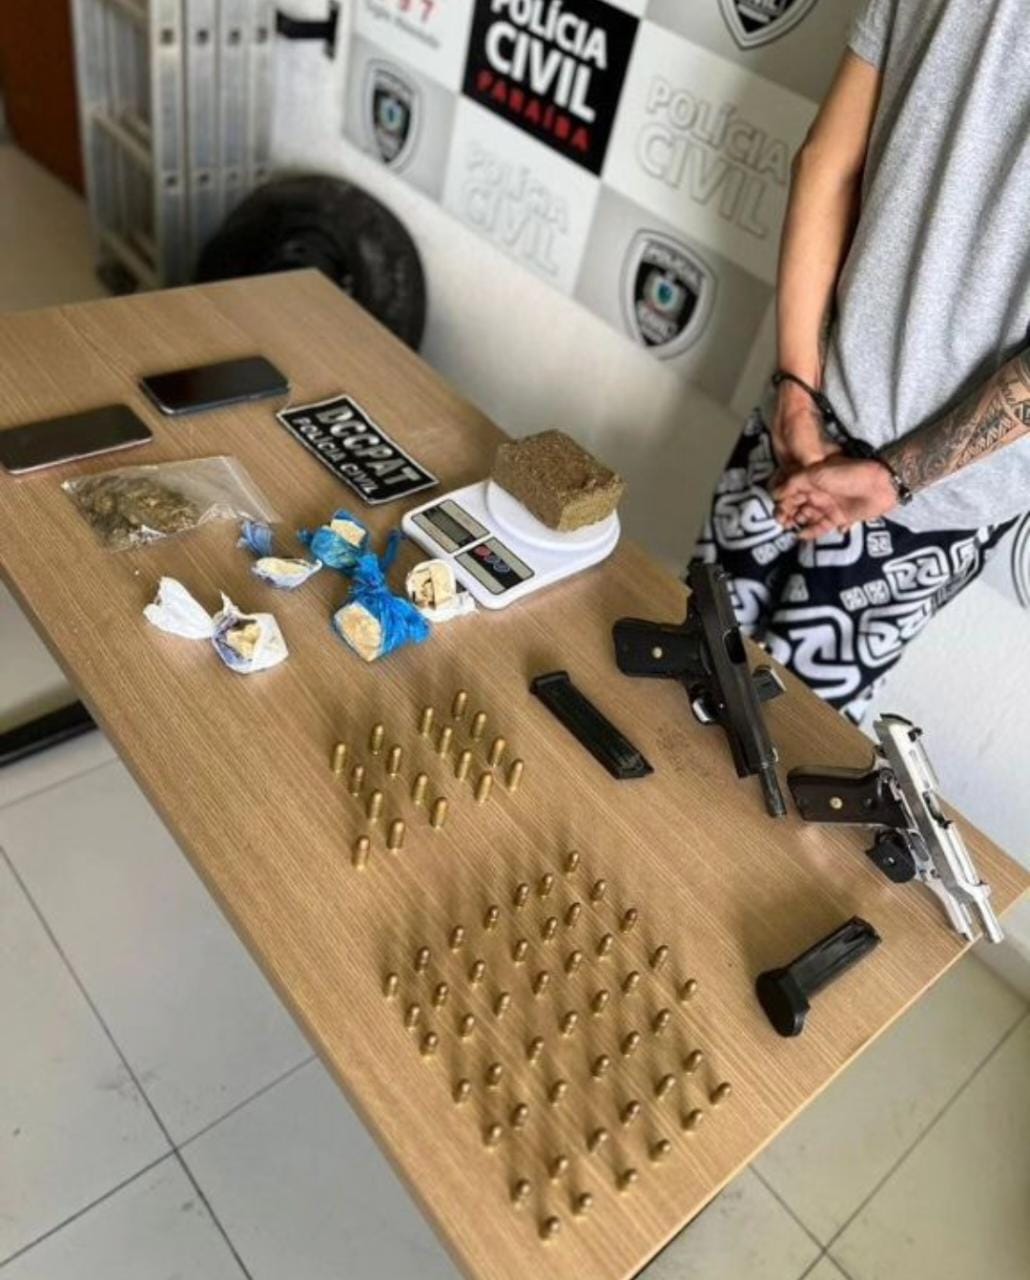 Suspeito de integrar facção criminosa é preso em João Pessoa com armas e outros objetos